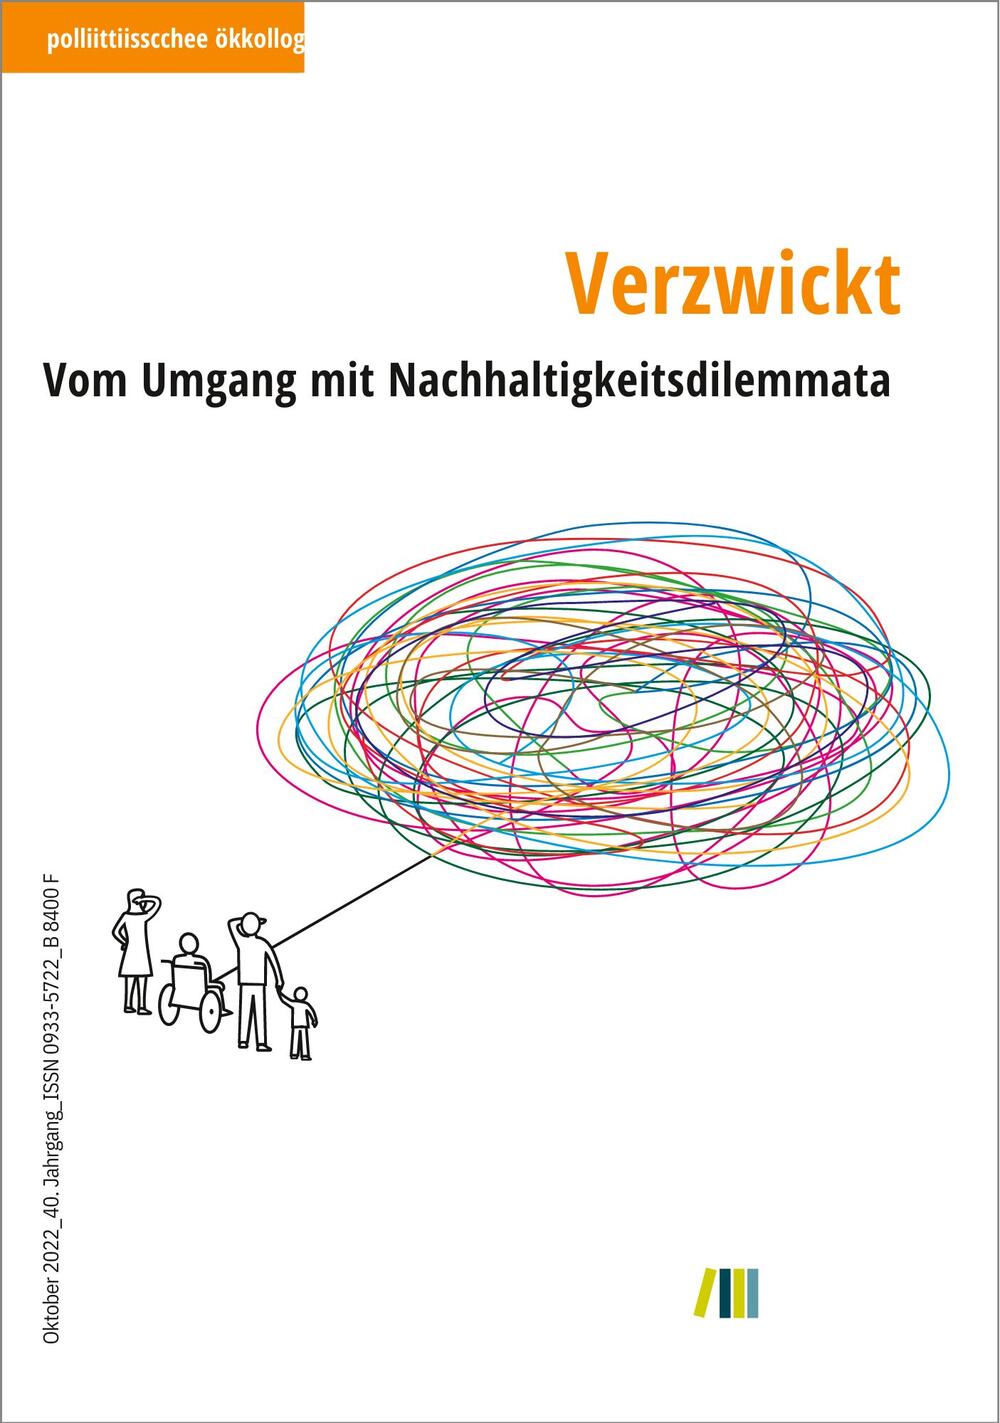 Titelbild zu  politische ökologie, Verzwickt - Vom Umgang mit Nachhaltigkeitsdilemmata  © oekom Verlag